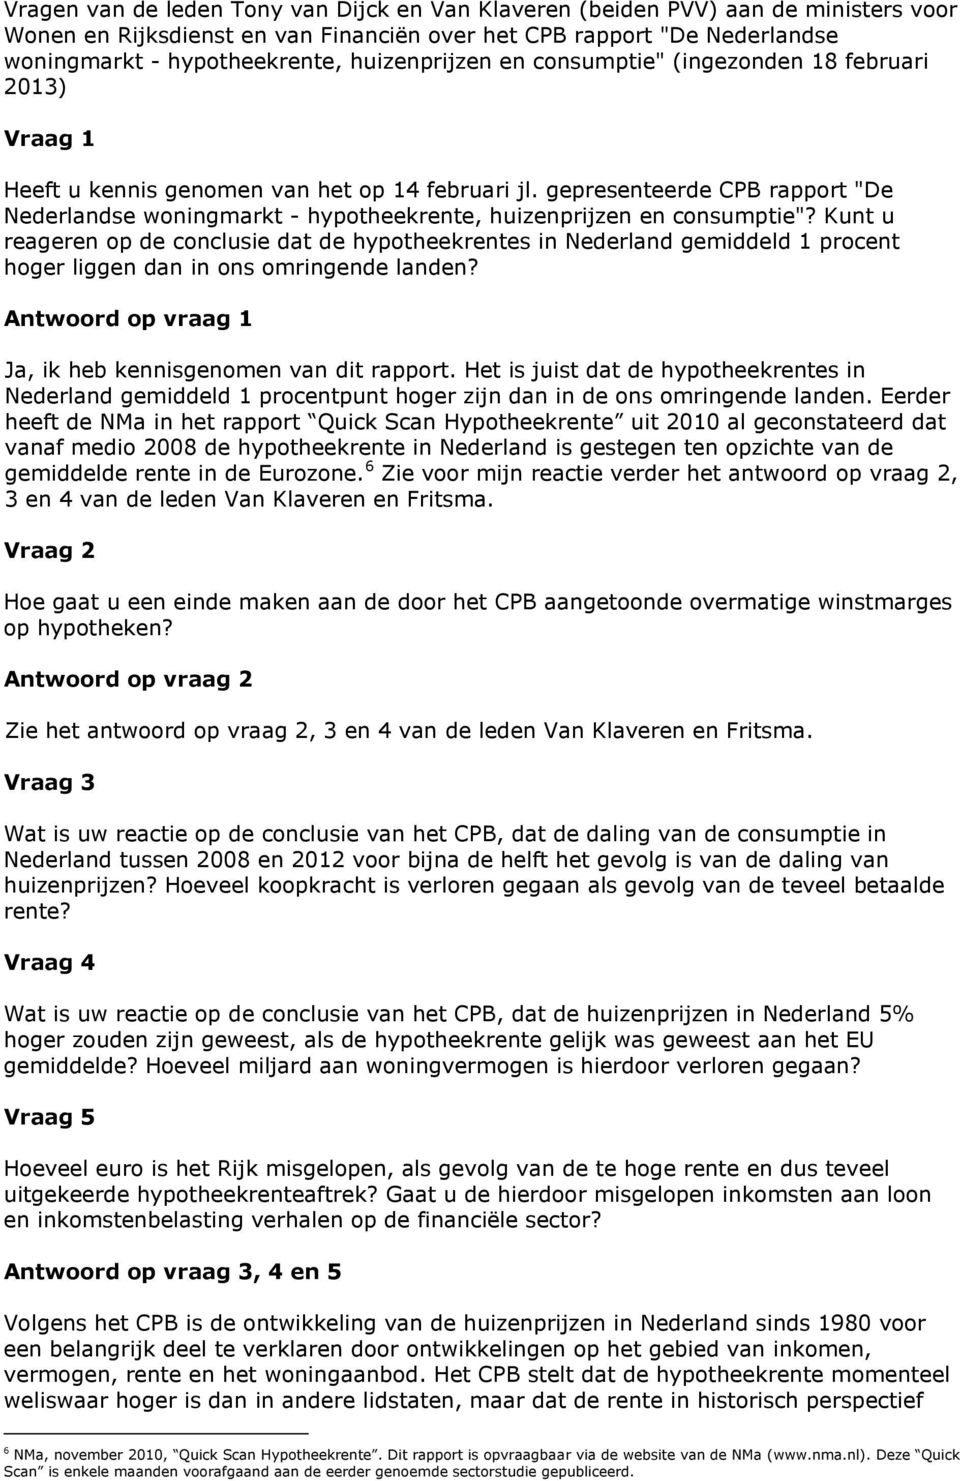 gepresenteerde CPB rapport "De Nederlandse woningmarkt - hypotheekrente, huizenprijzen en consumptie"?